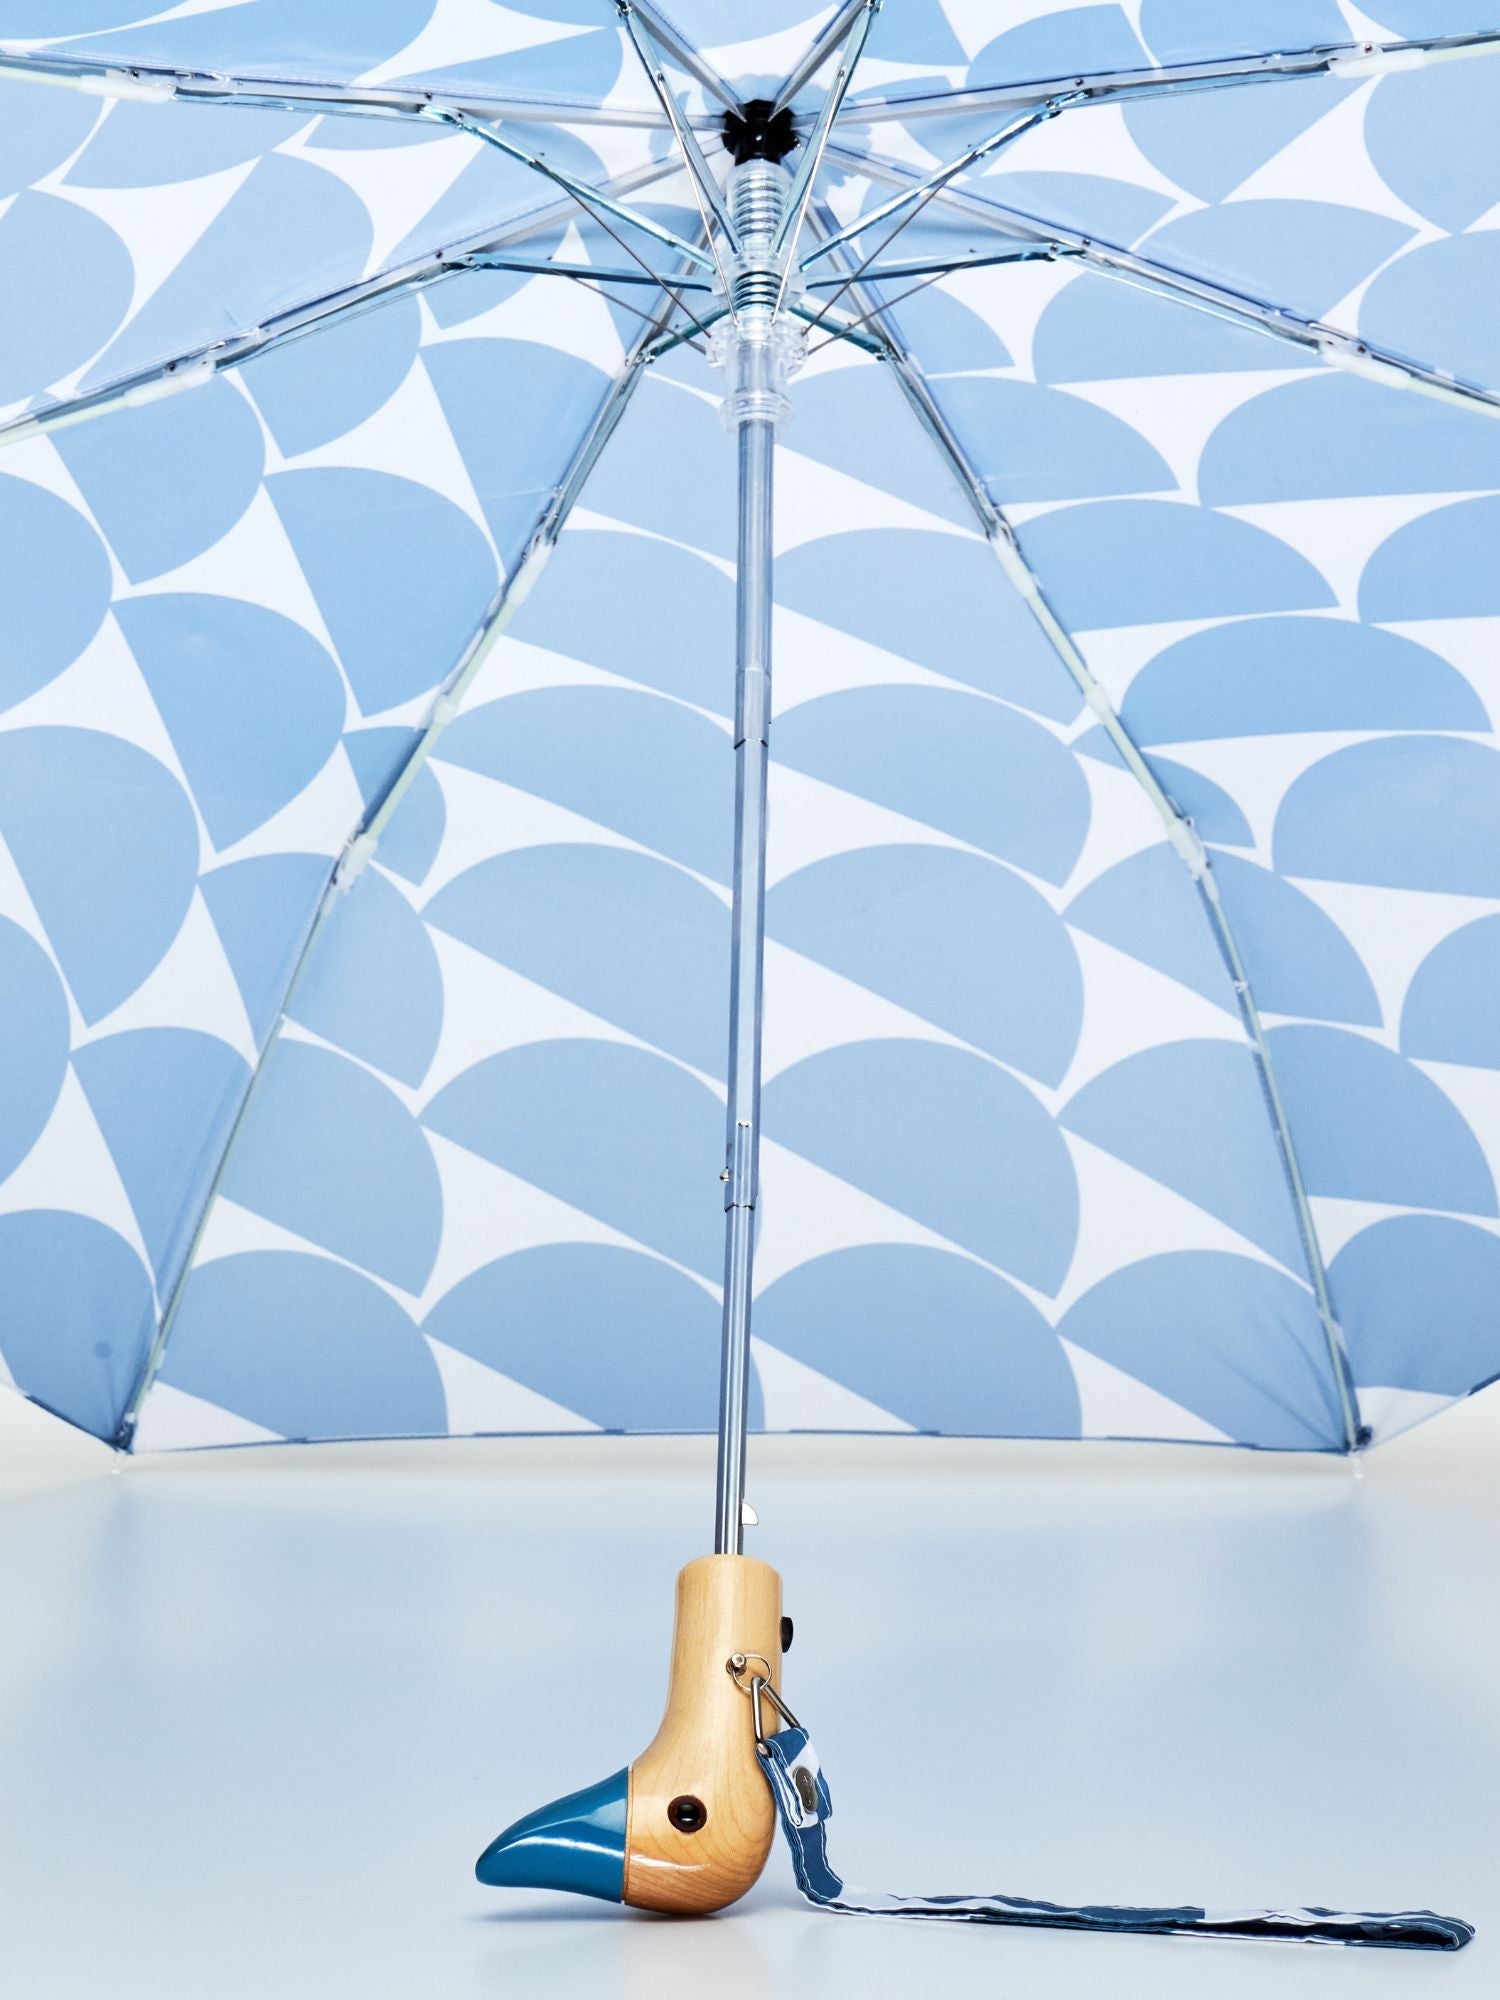 Original Duckhead Denim Moon Compact Umbrella